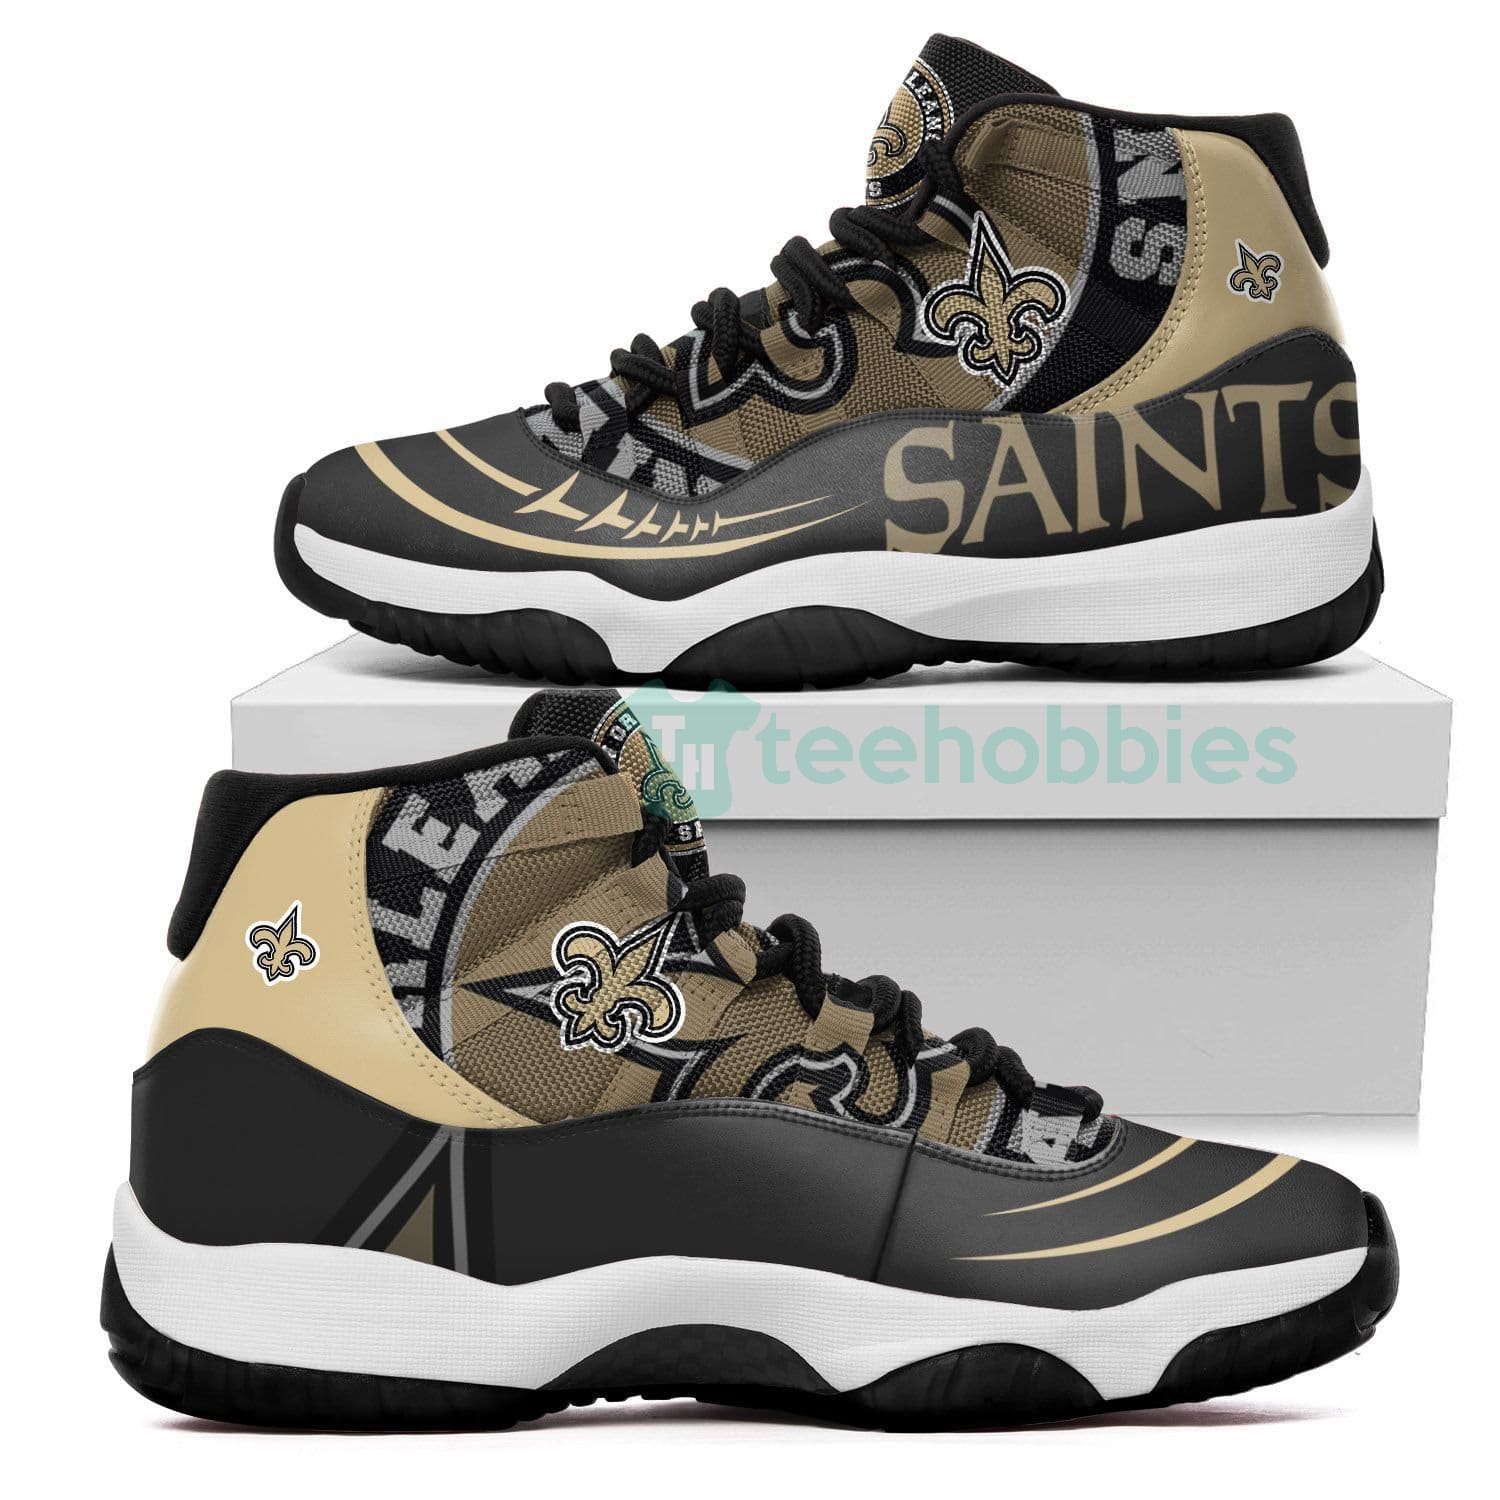 New Orleans Saints New Air Jordan 11 Shoes Fans